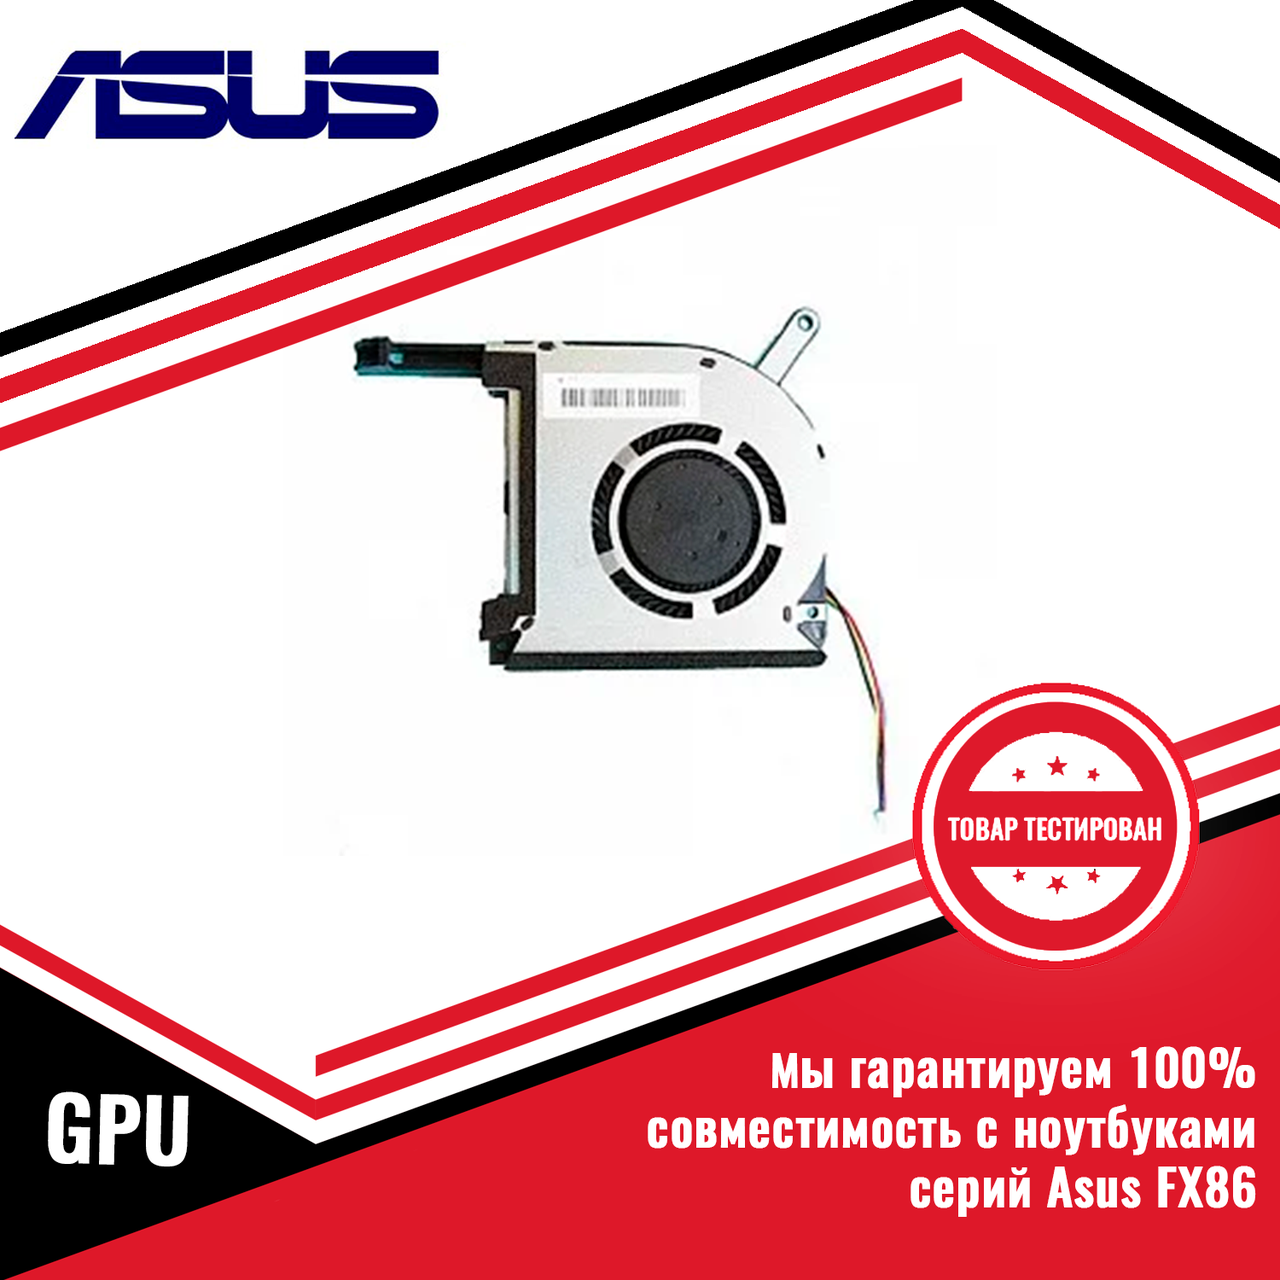 Оригинальный кулер (вентилятор) Asus FX86 GPU